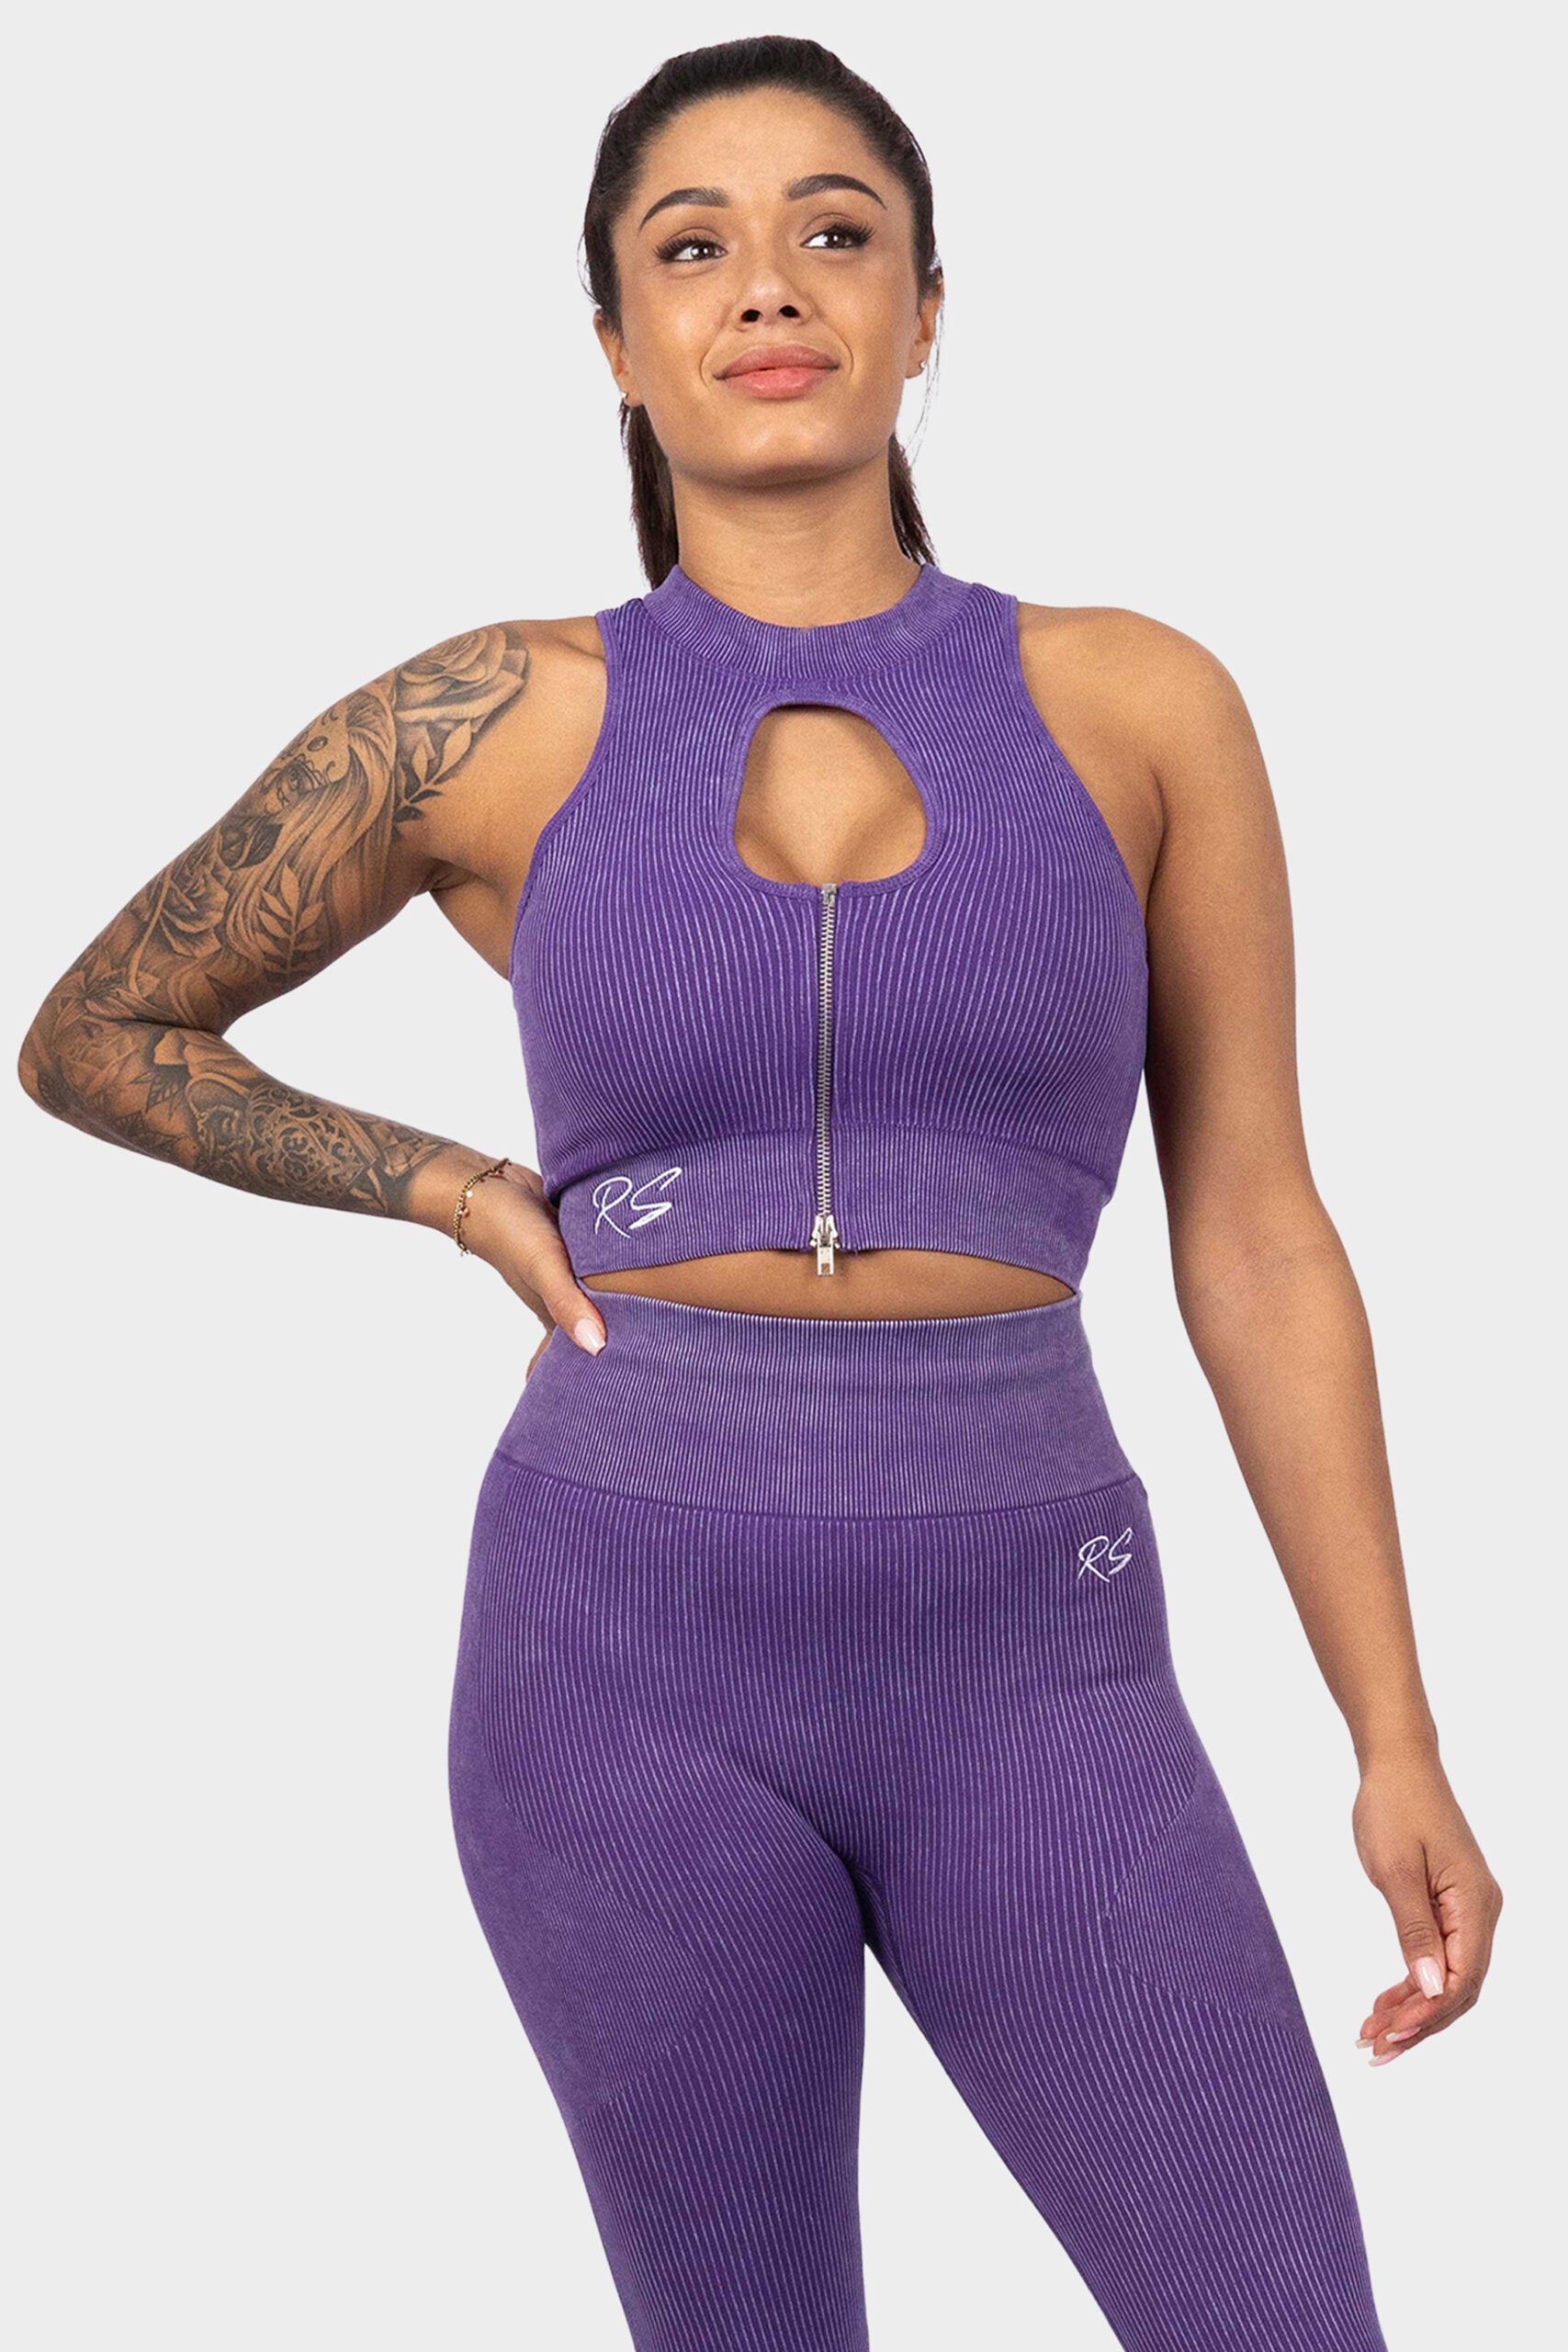 zip-top-purple-front